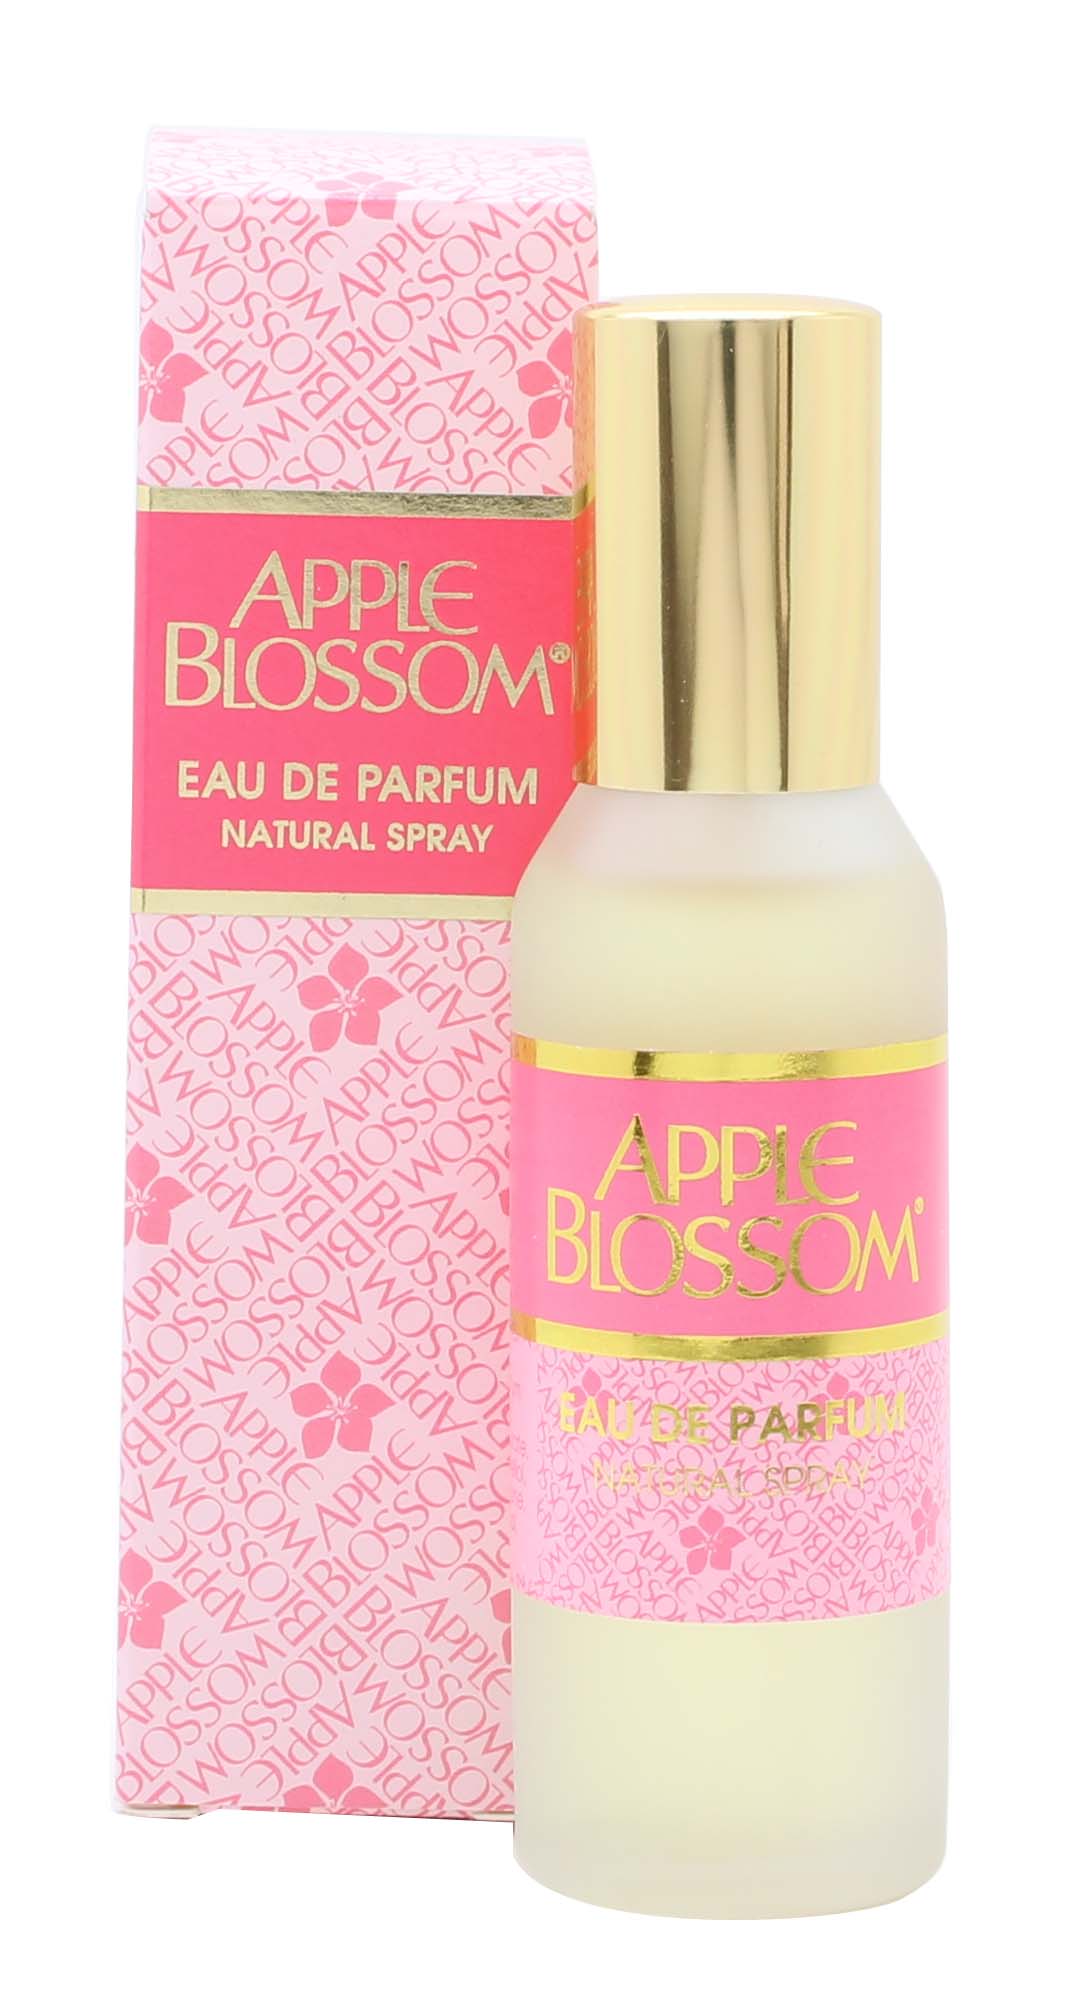 View Apple Blossom Eau de Parfum 30ml Spray information